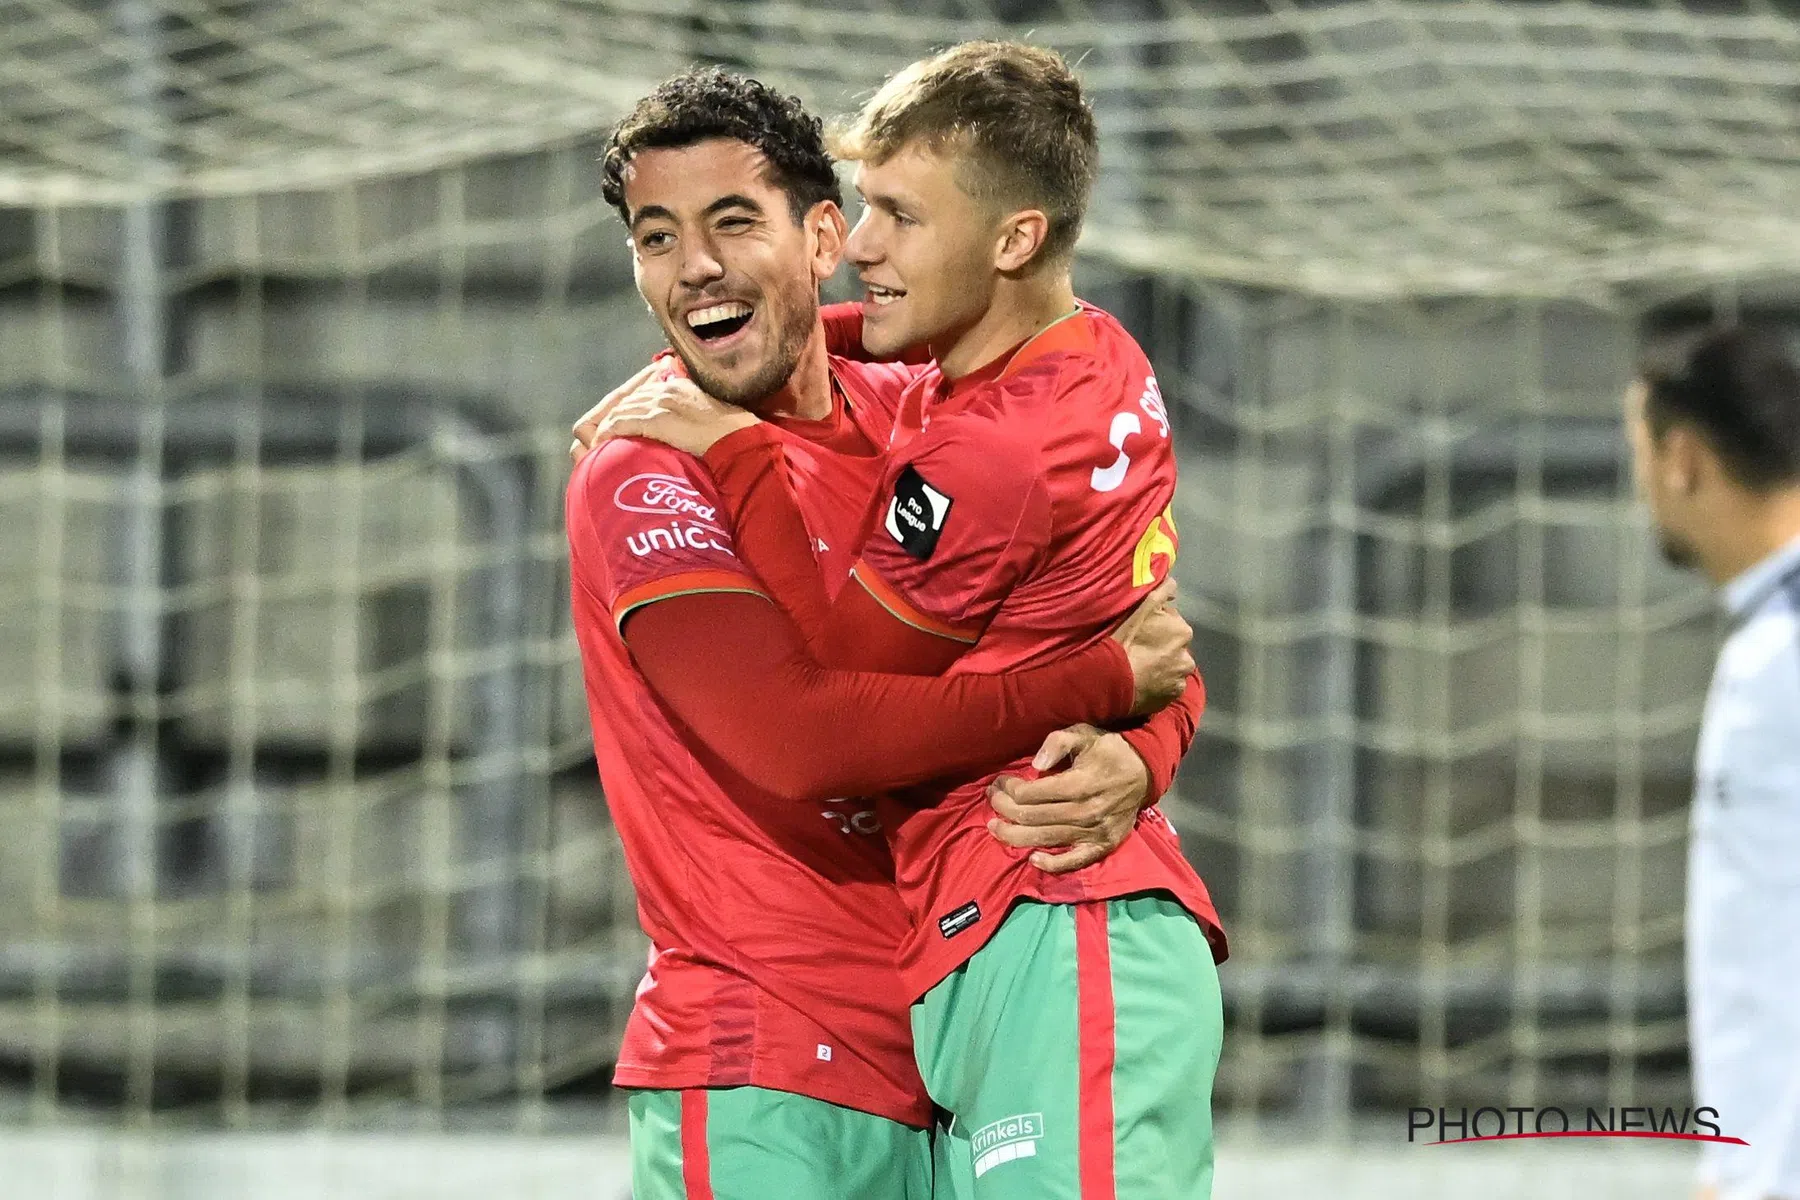 Doelpuntenmaker Pérez KV Oostende blij met overwinning tegen Eupen